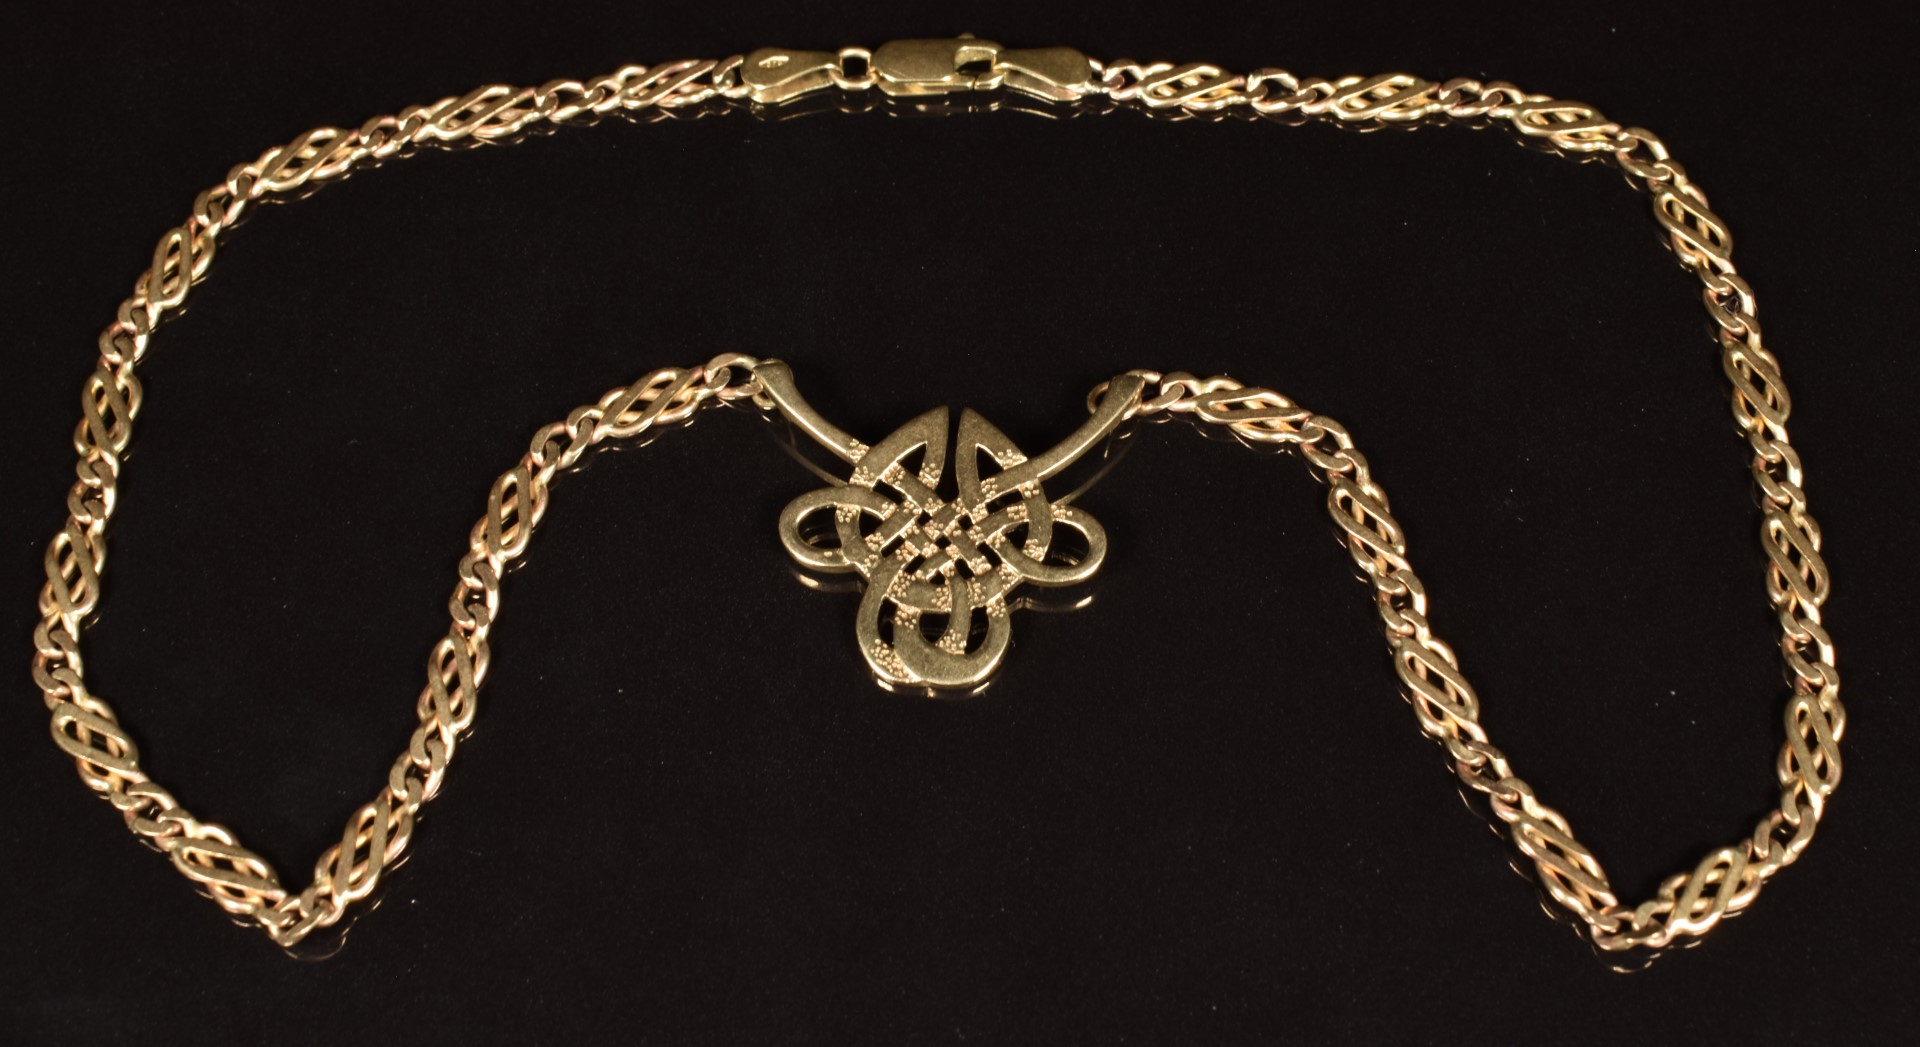 A 9ct gold Celtic cross necklace, length 42cm, 13.8g